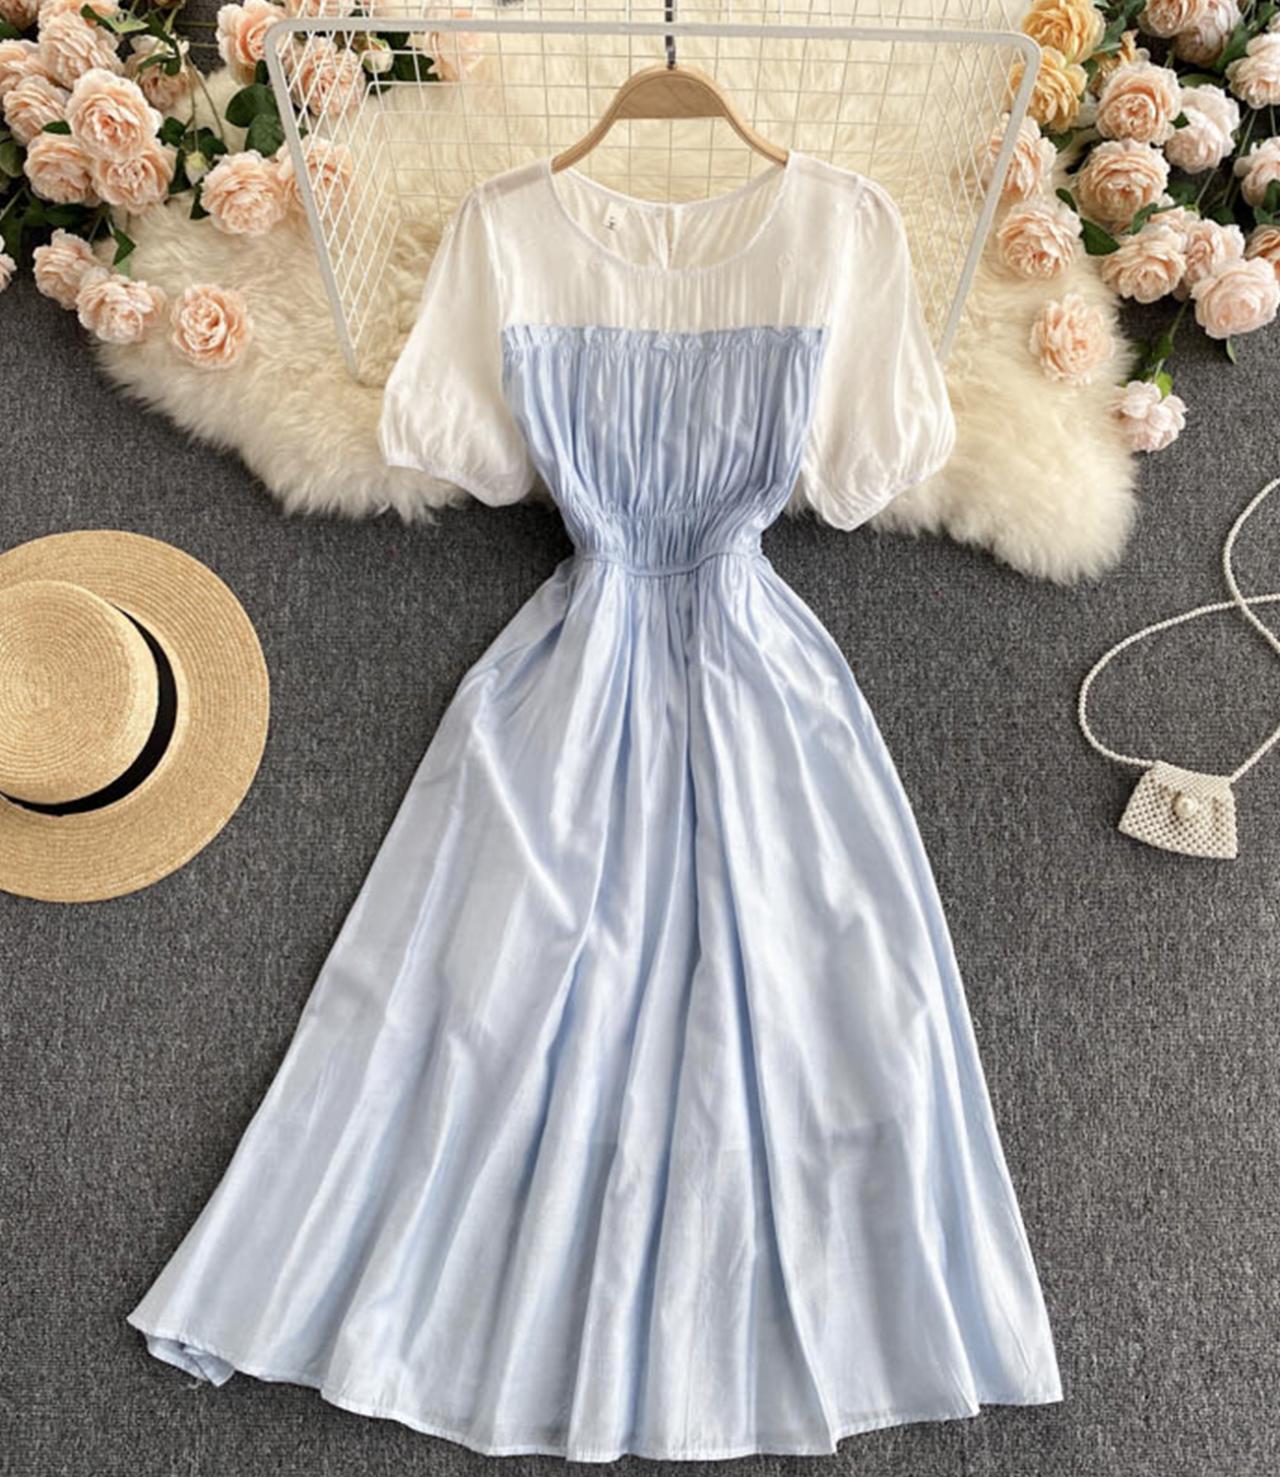 Simple A line dress fashion dress  665